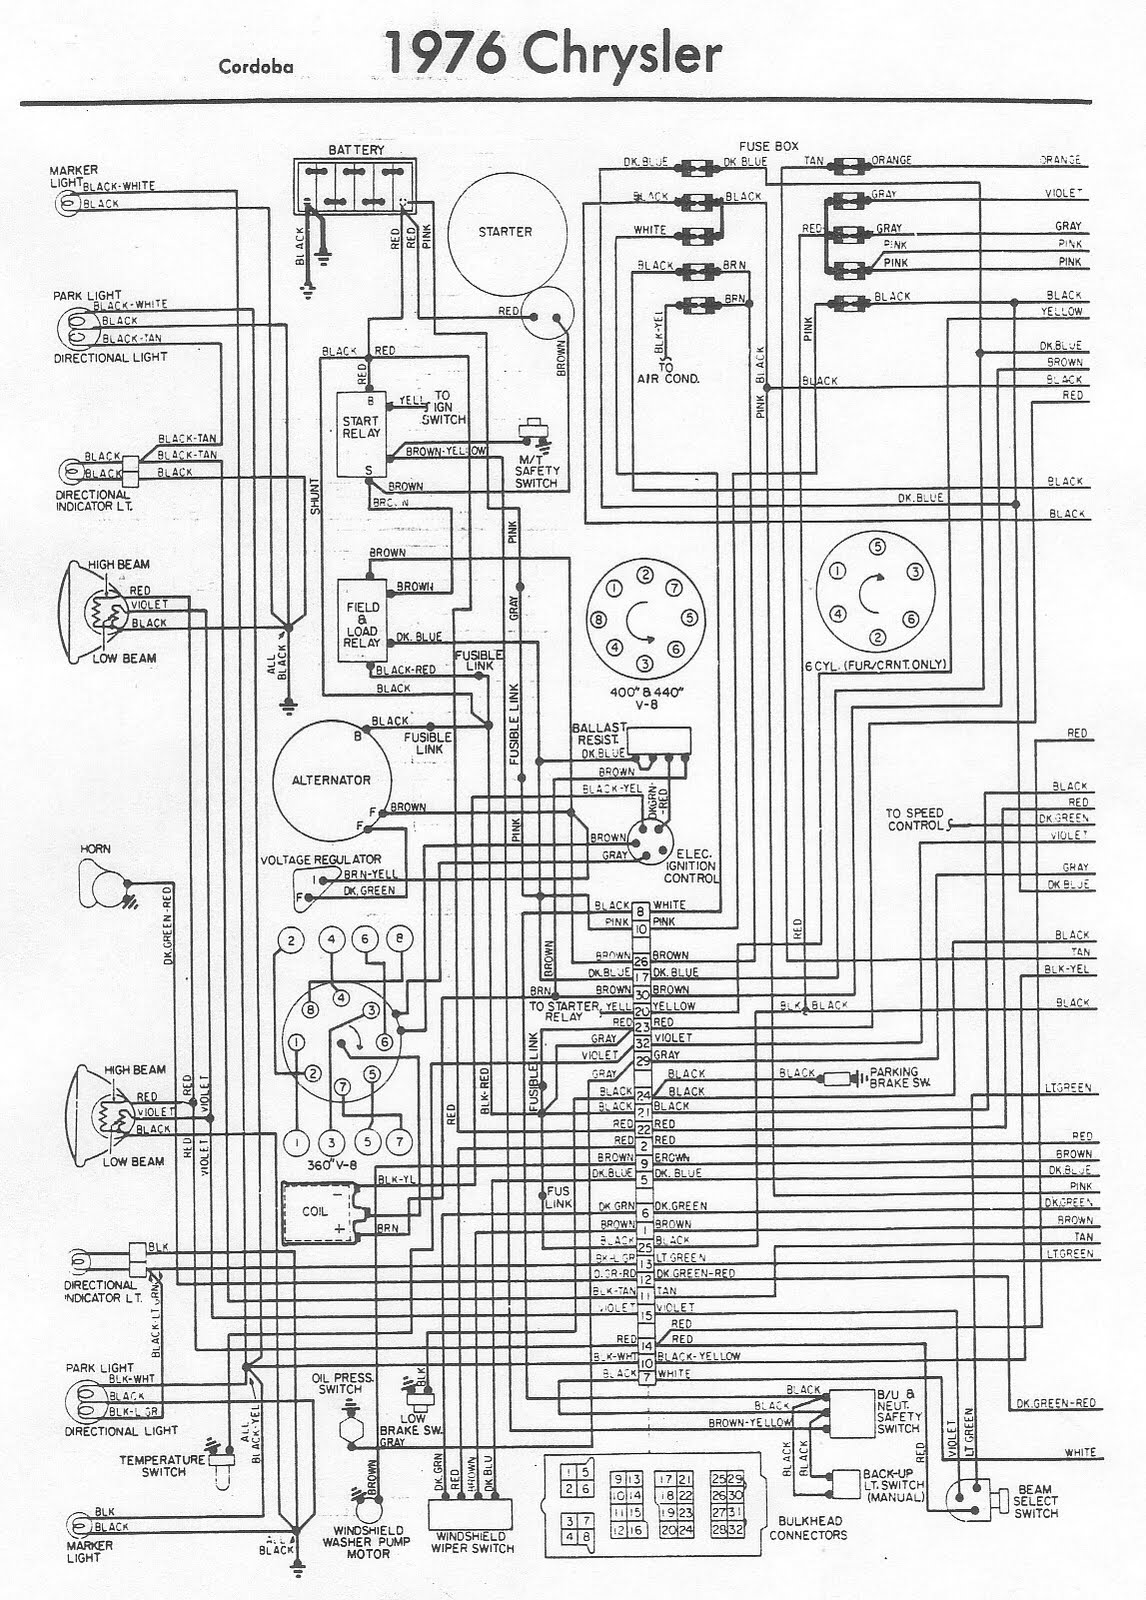 ftq24pbvju wiring diagram